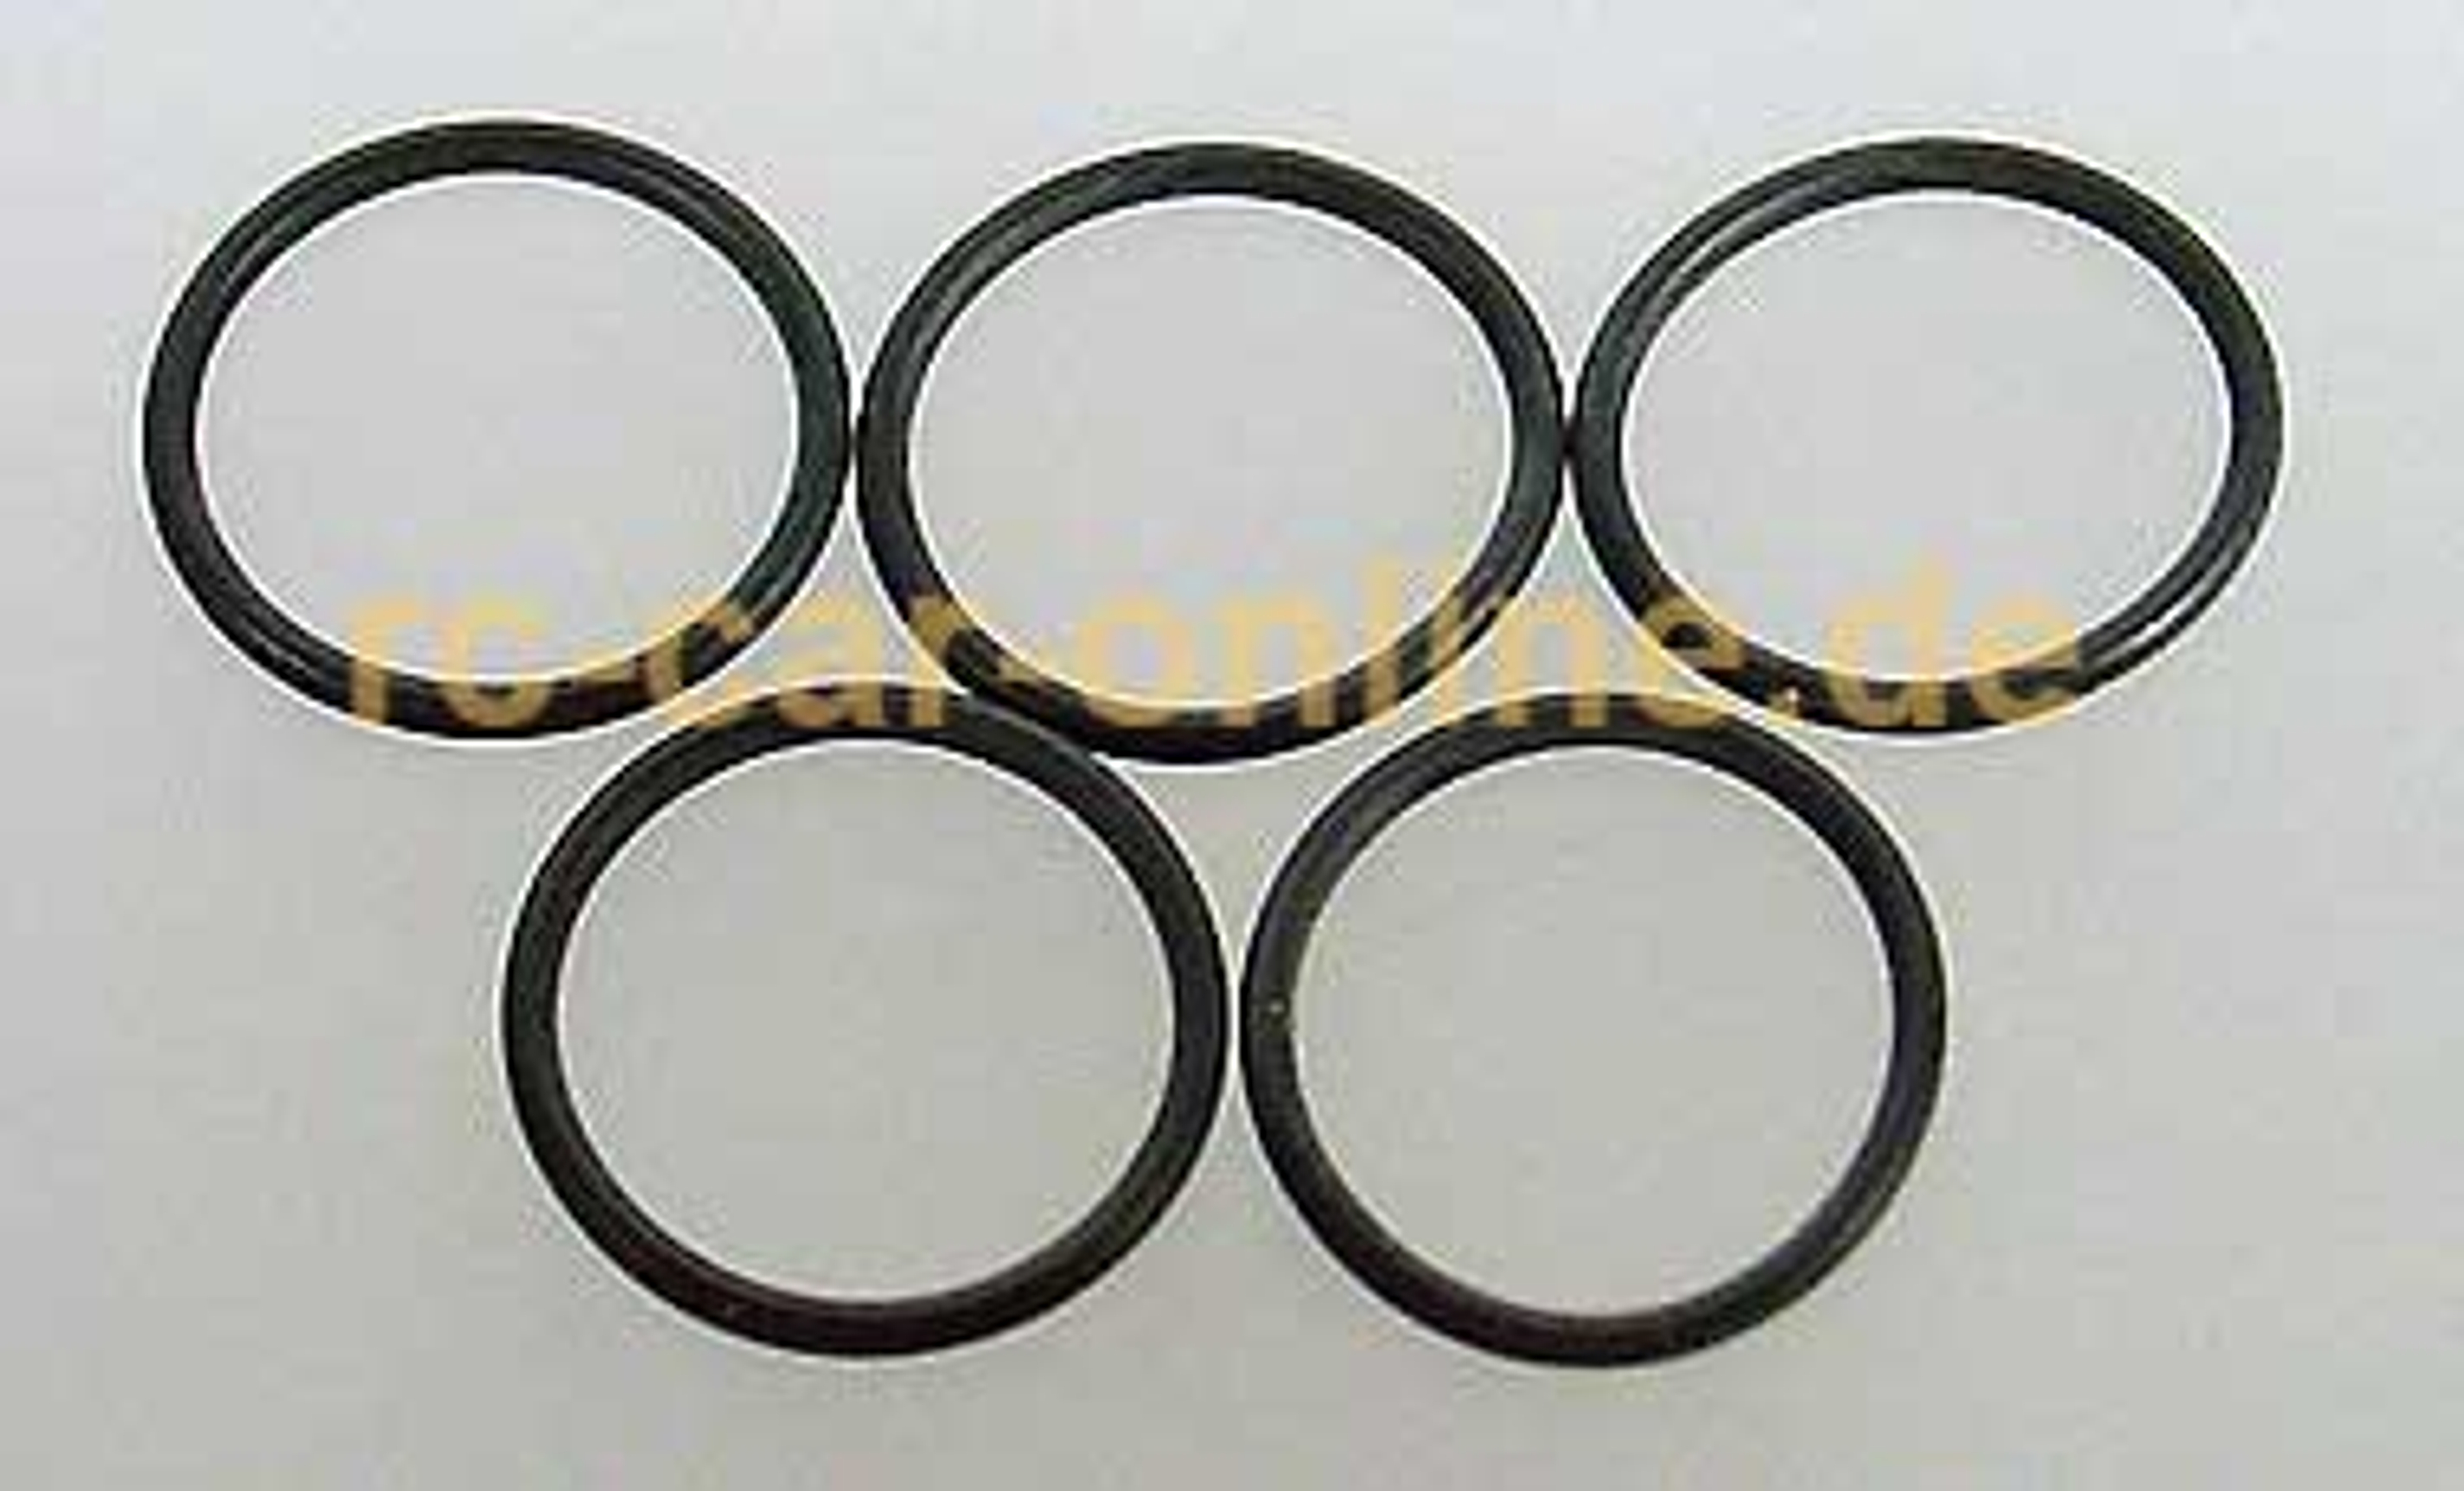 7084/01 FG O-ring for alloy shock absorber piston 13,3mm - 5pcs.